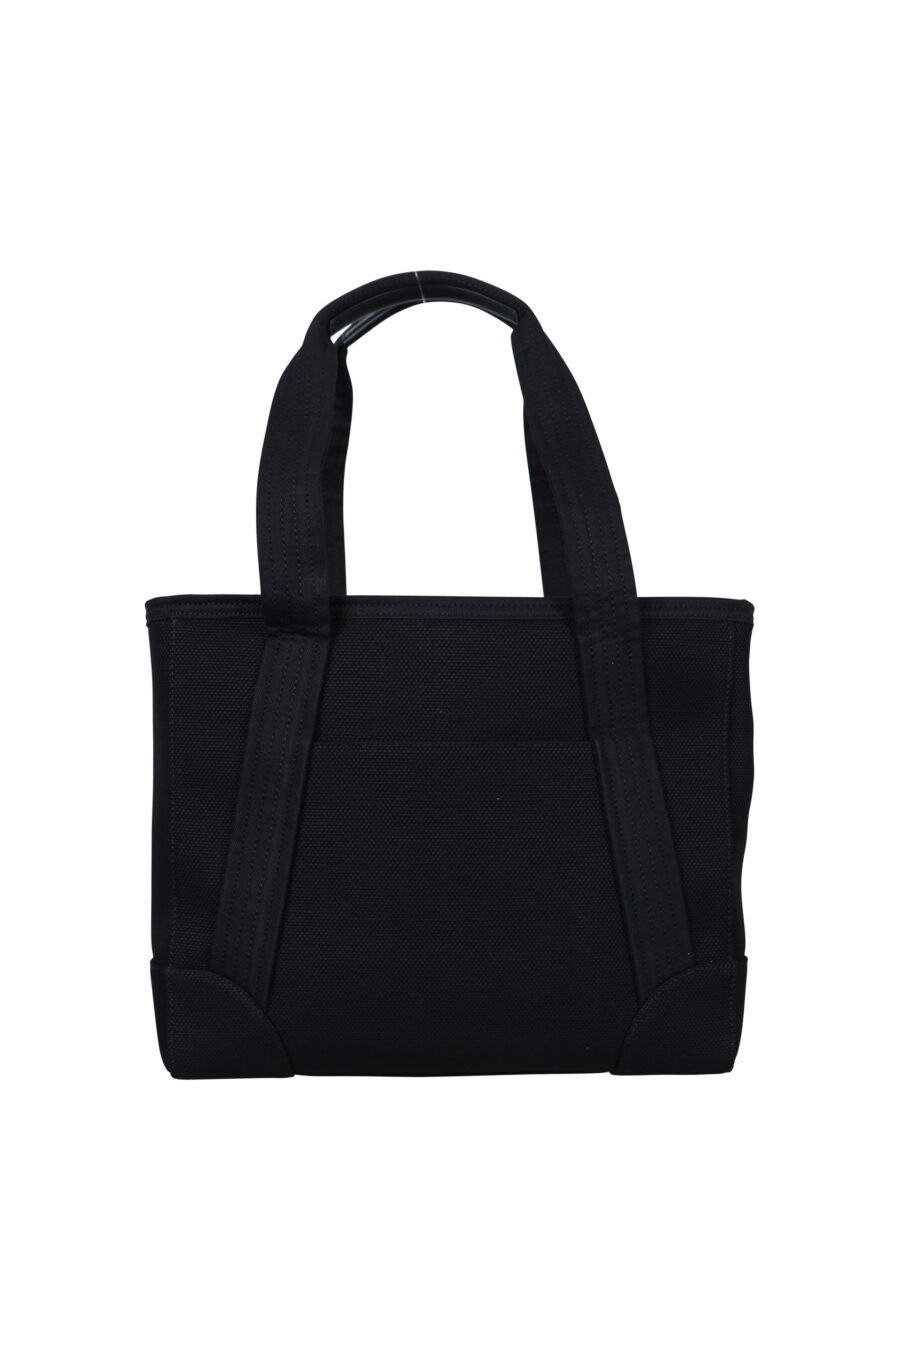 Tote bag with minilogo "kenzo paris" - 3612230546899 2